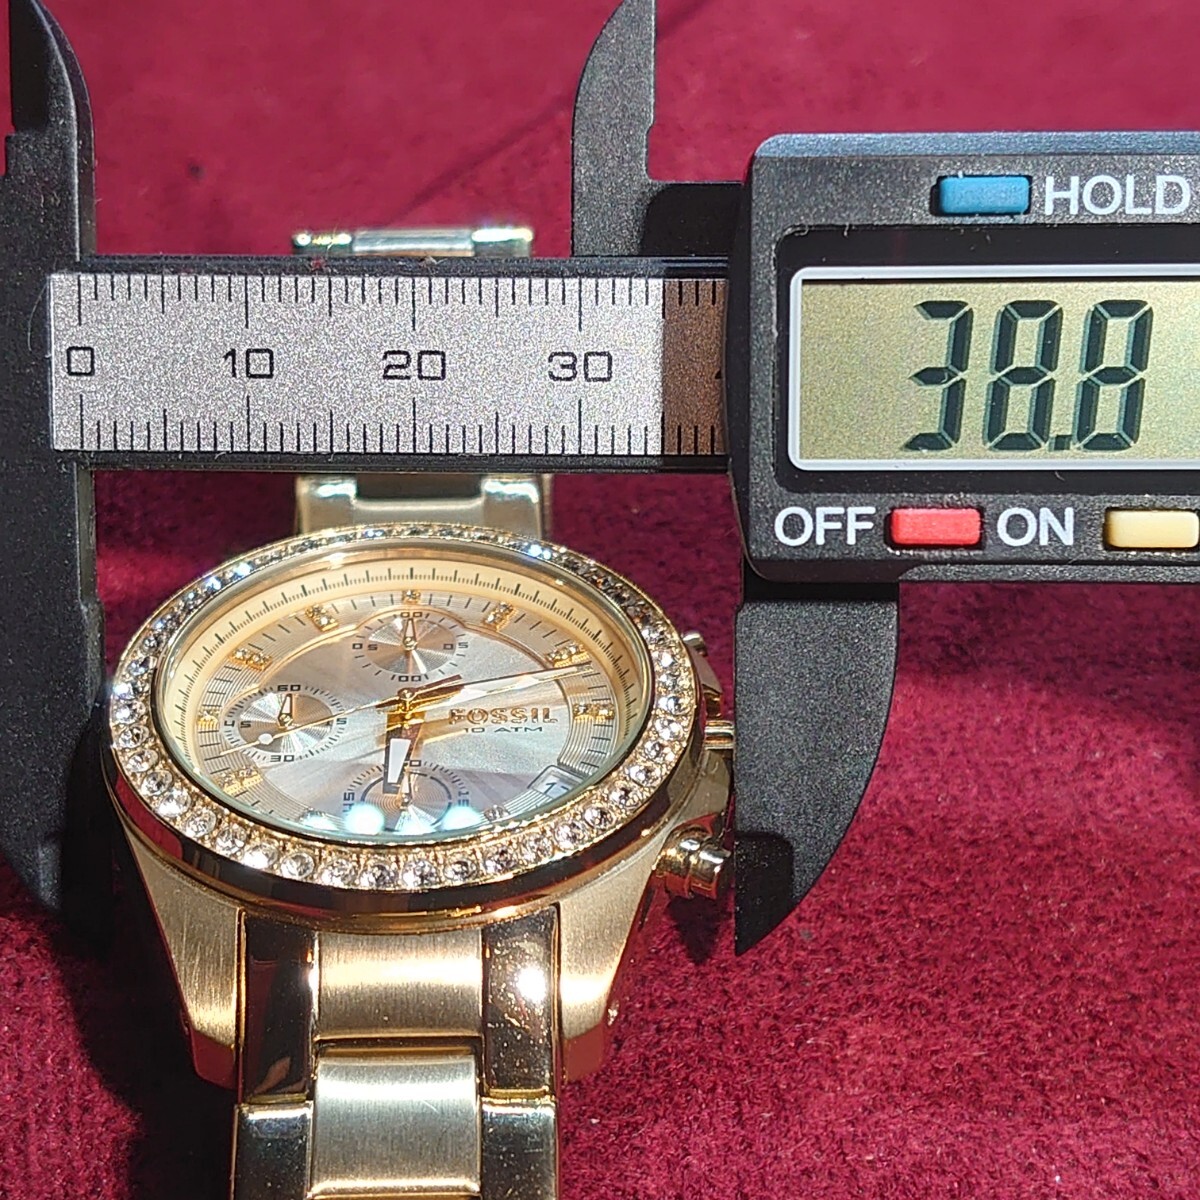 551[ батарейка заменен ]FOSSIL ES-2683 25102 женские наручные часы Fossil Gold × золотой циферблат аналог хронограф часы жестяная банка с коробкой 